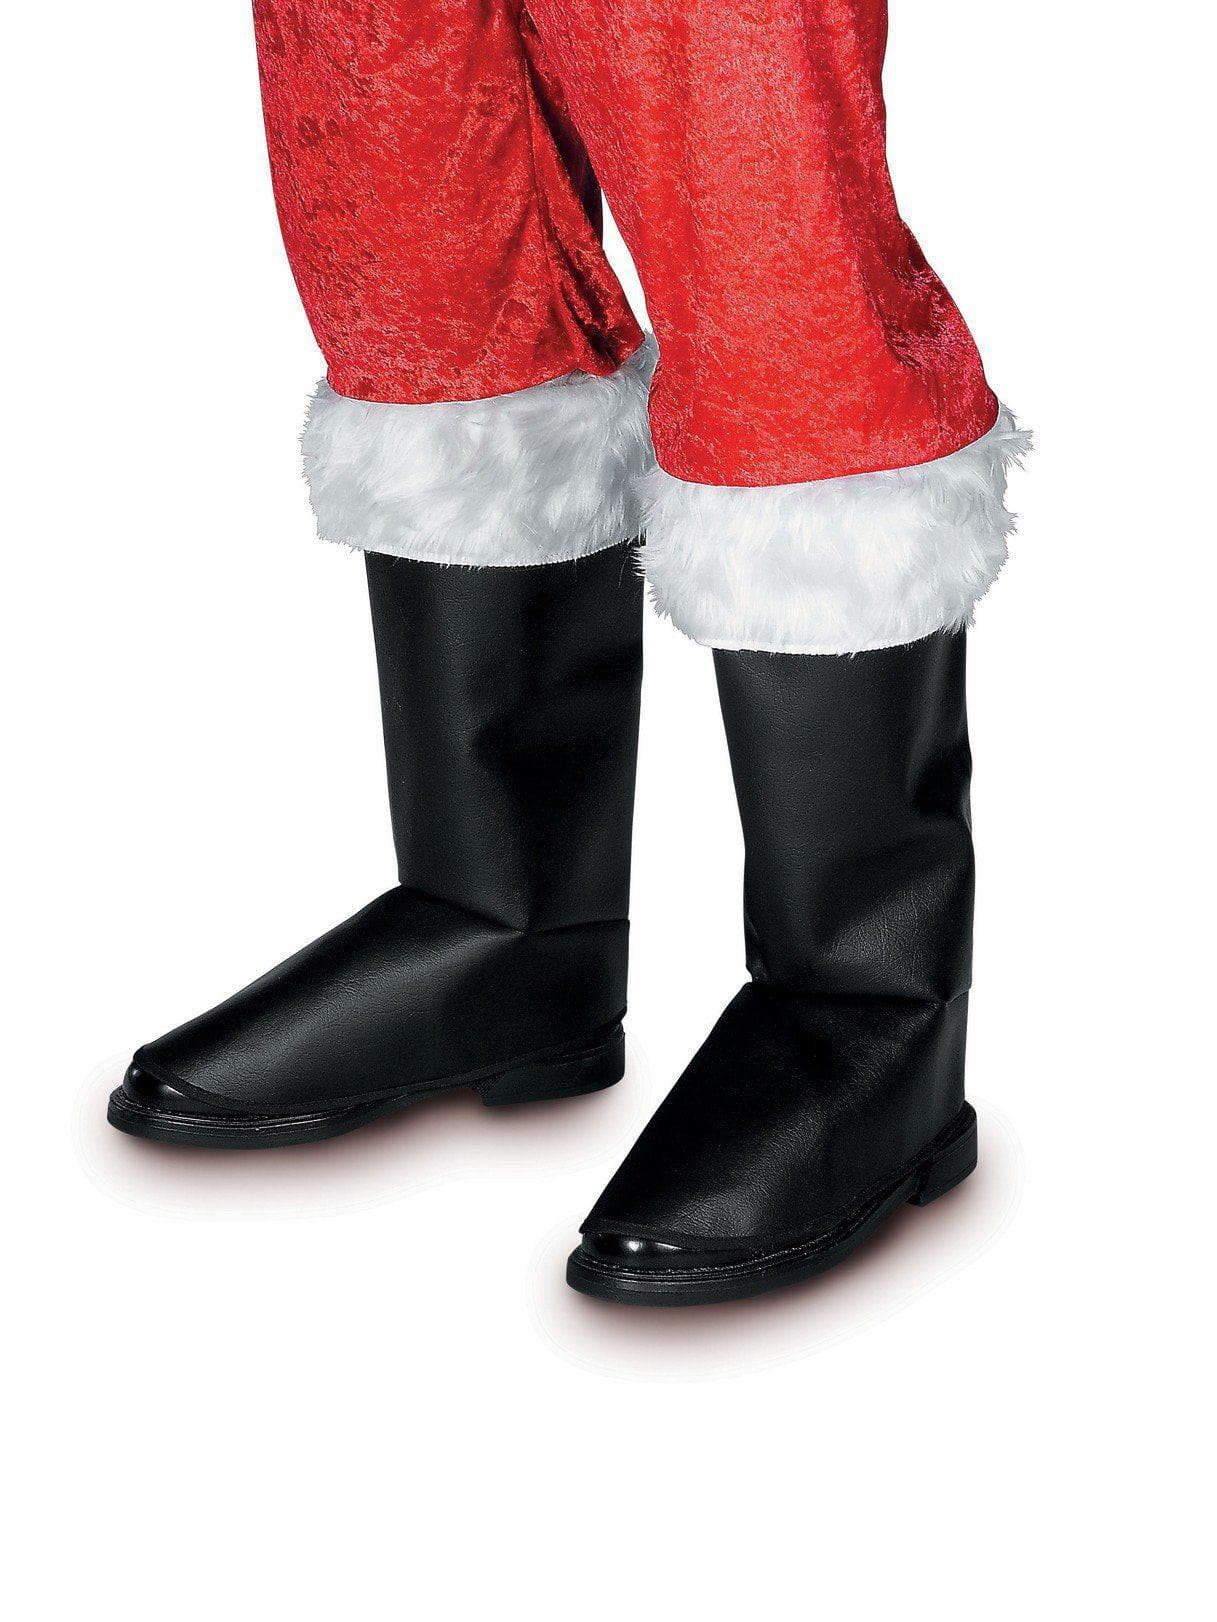 Santa Deluxe Boot Tops - costumes.com